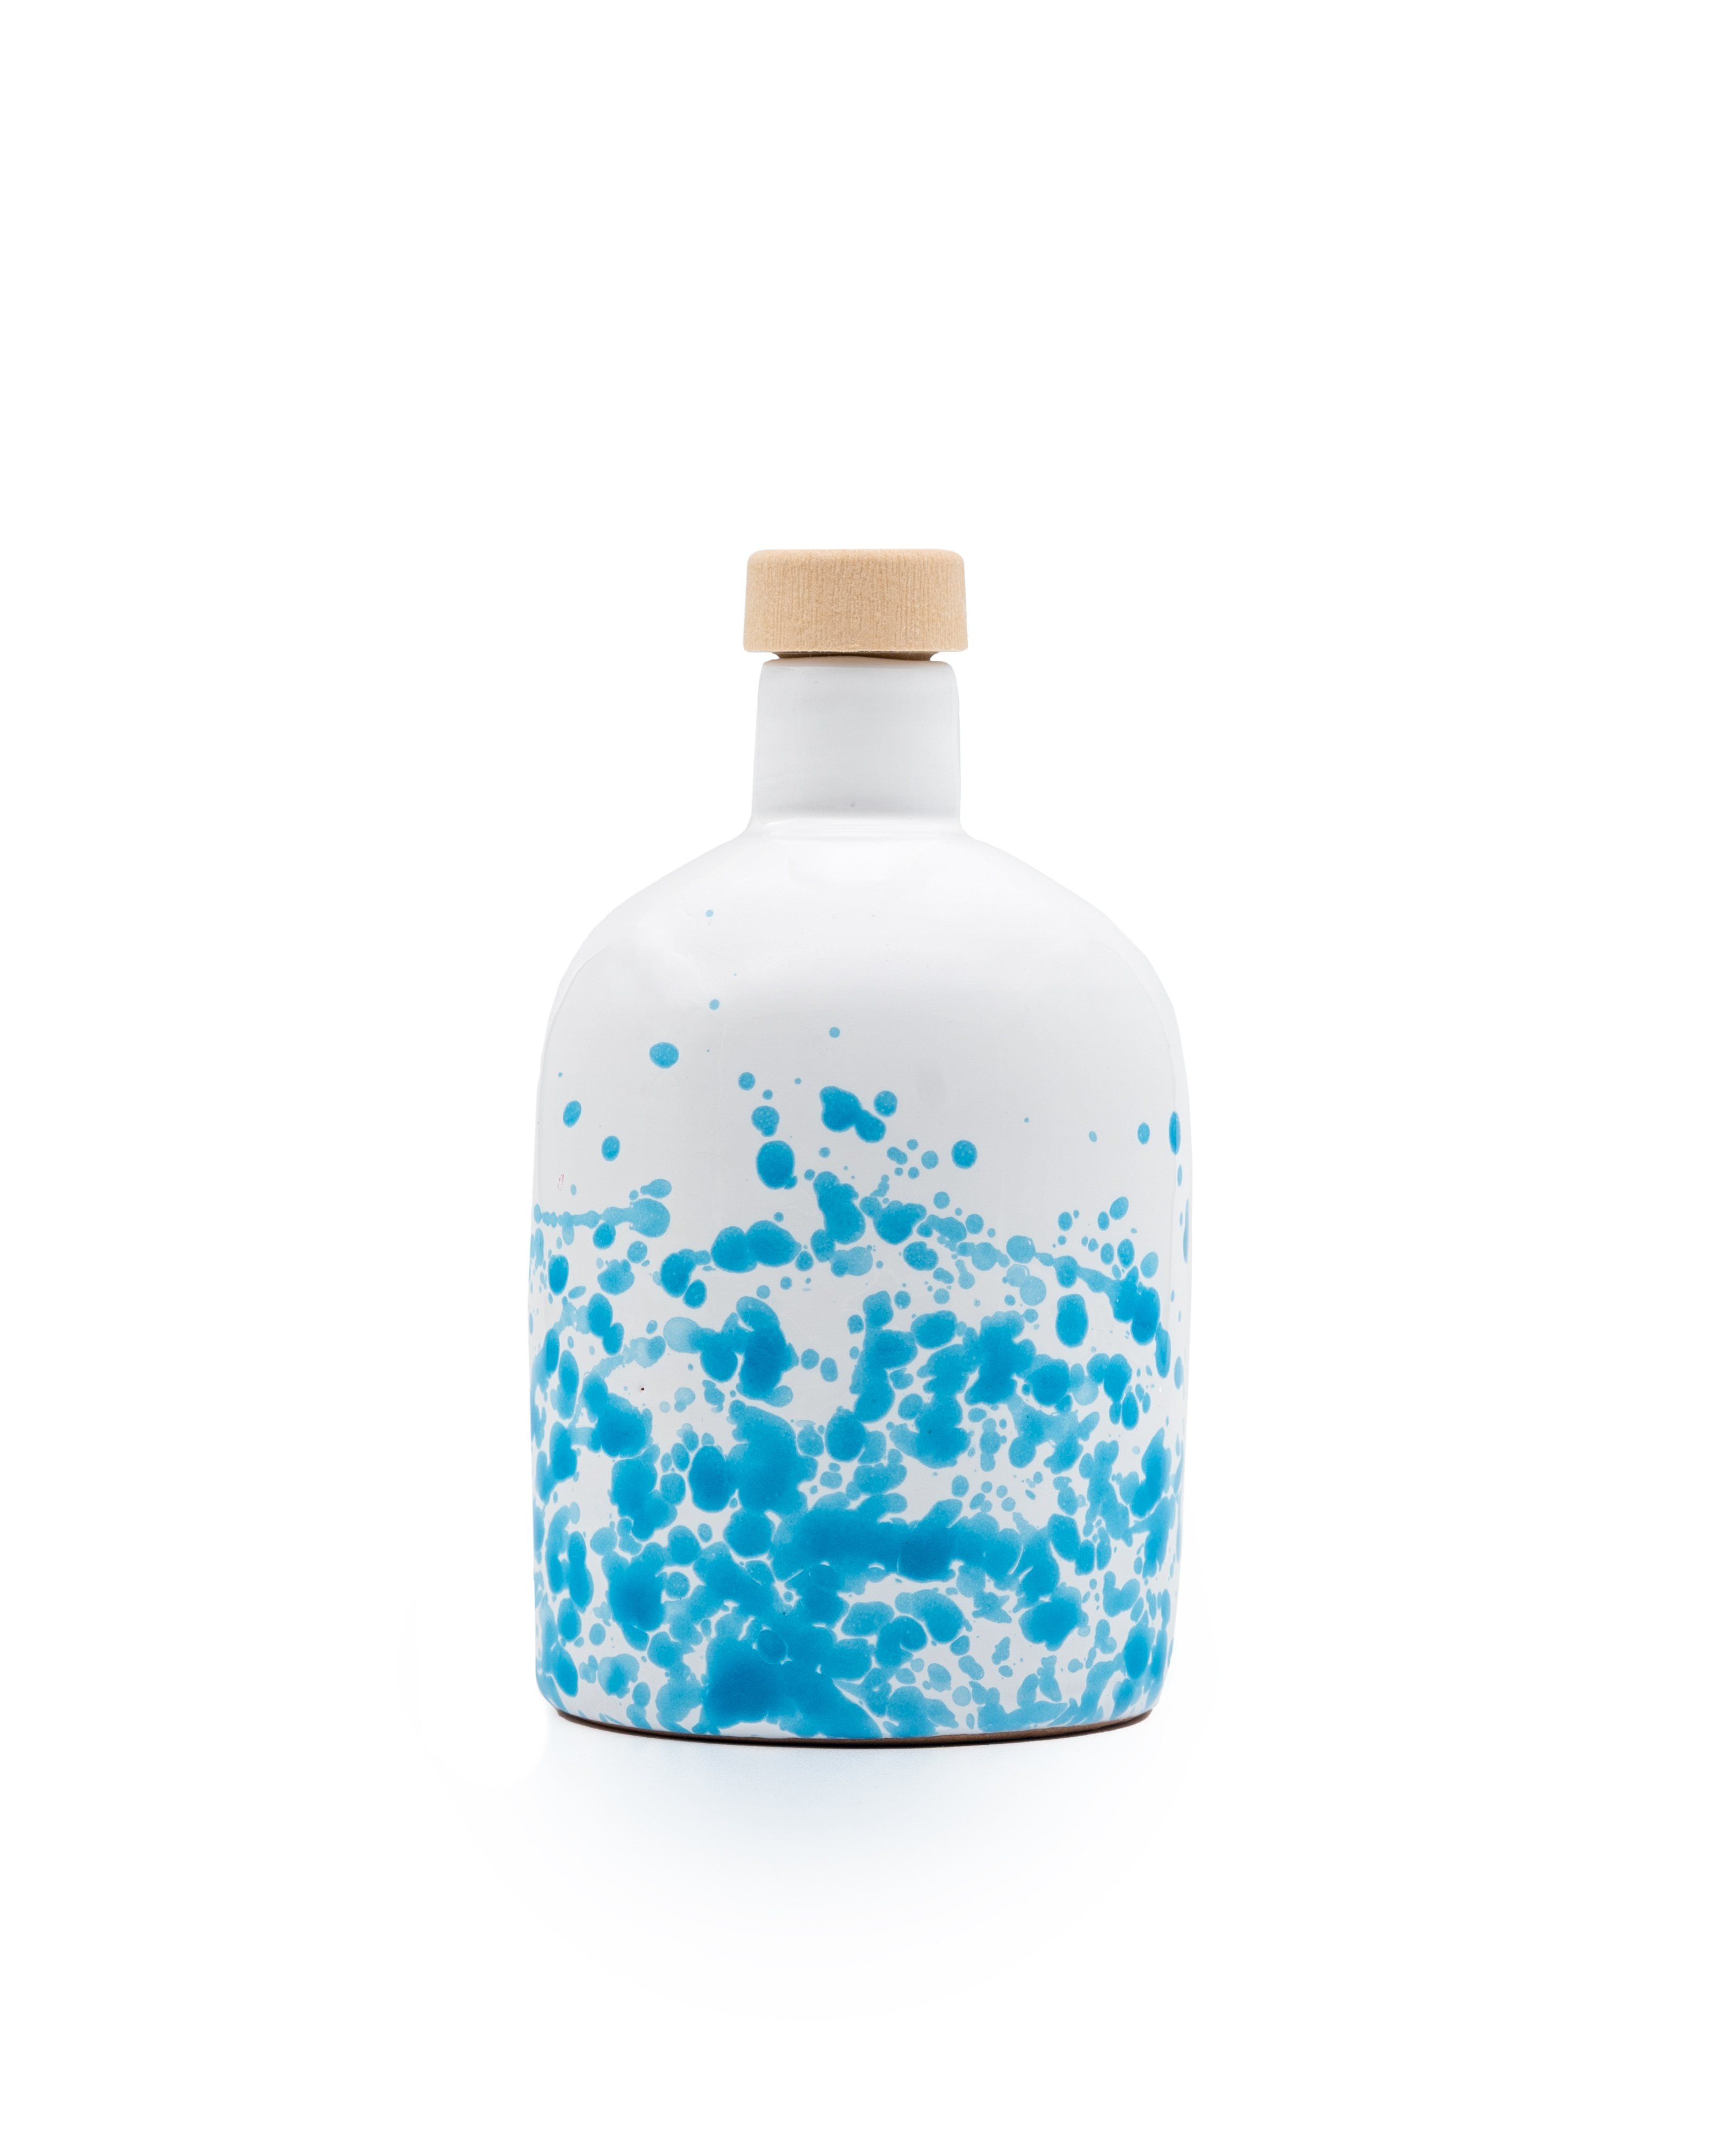 ALLEGRO native organic extra virgin olive oil, filtered, 500ml blue ceramic bottle.